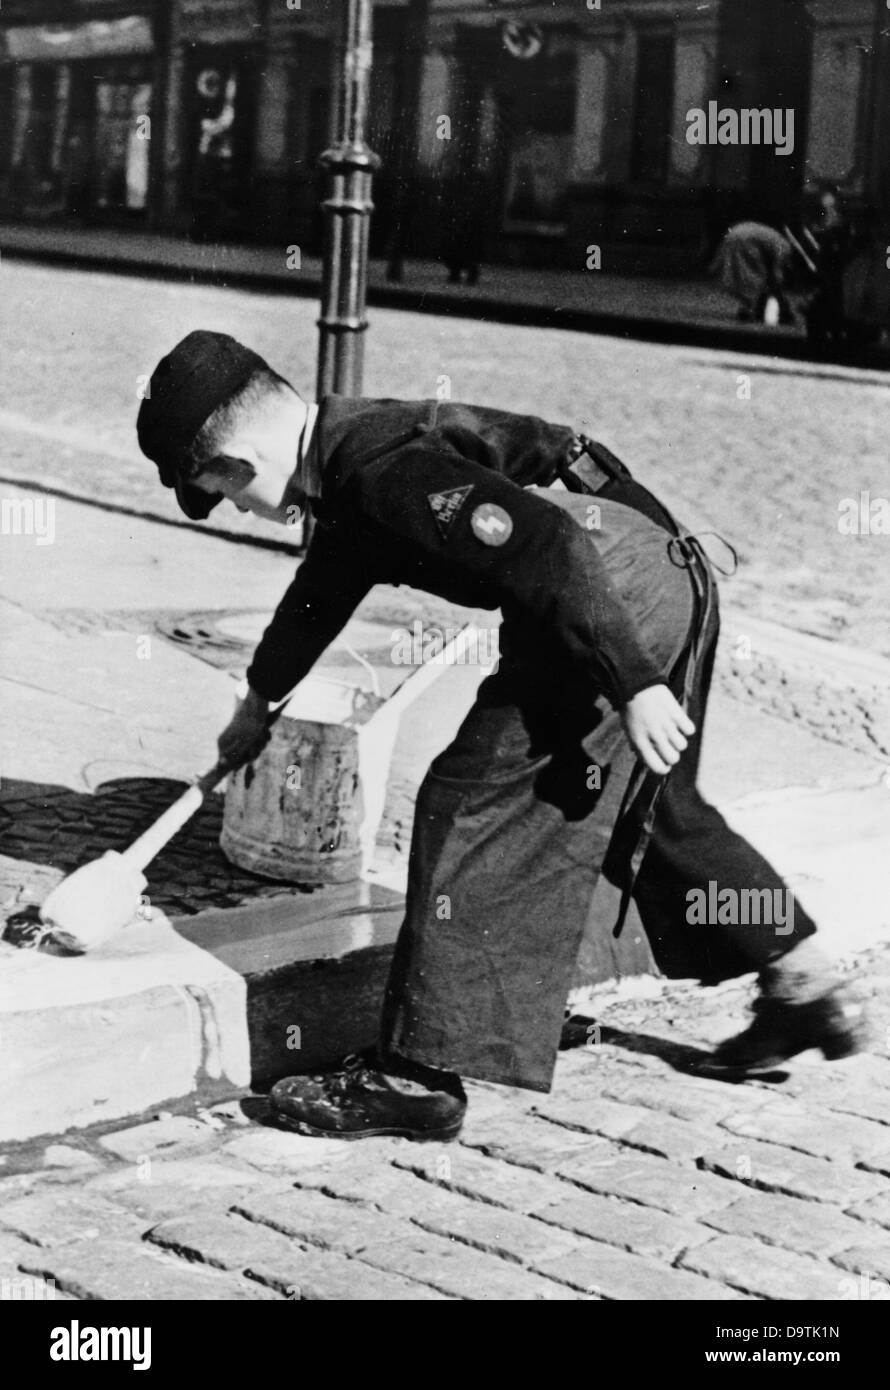 Un garçon, portant l'uniforme de la Jeunesse allemande, peint des bordures de trottoir pour la protection contre les attaques aériennes ennemies, en août 1940, à Berlin. Fotoarchiv für Zeitgeschichte Banque D'Images